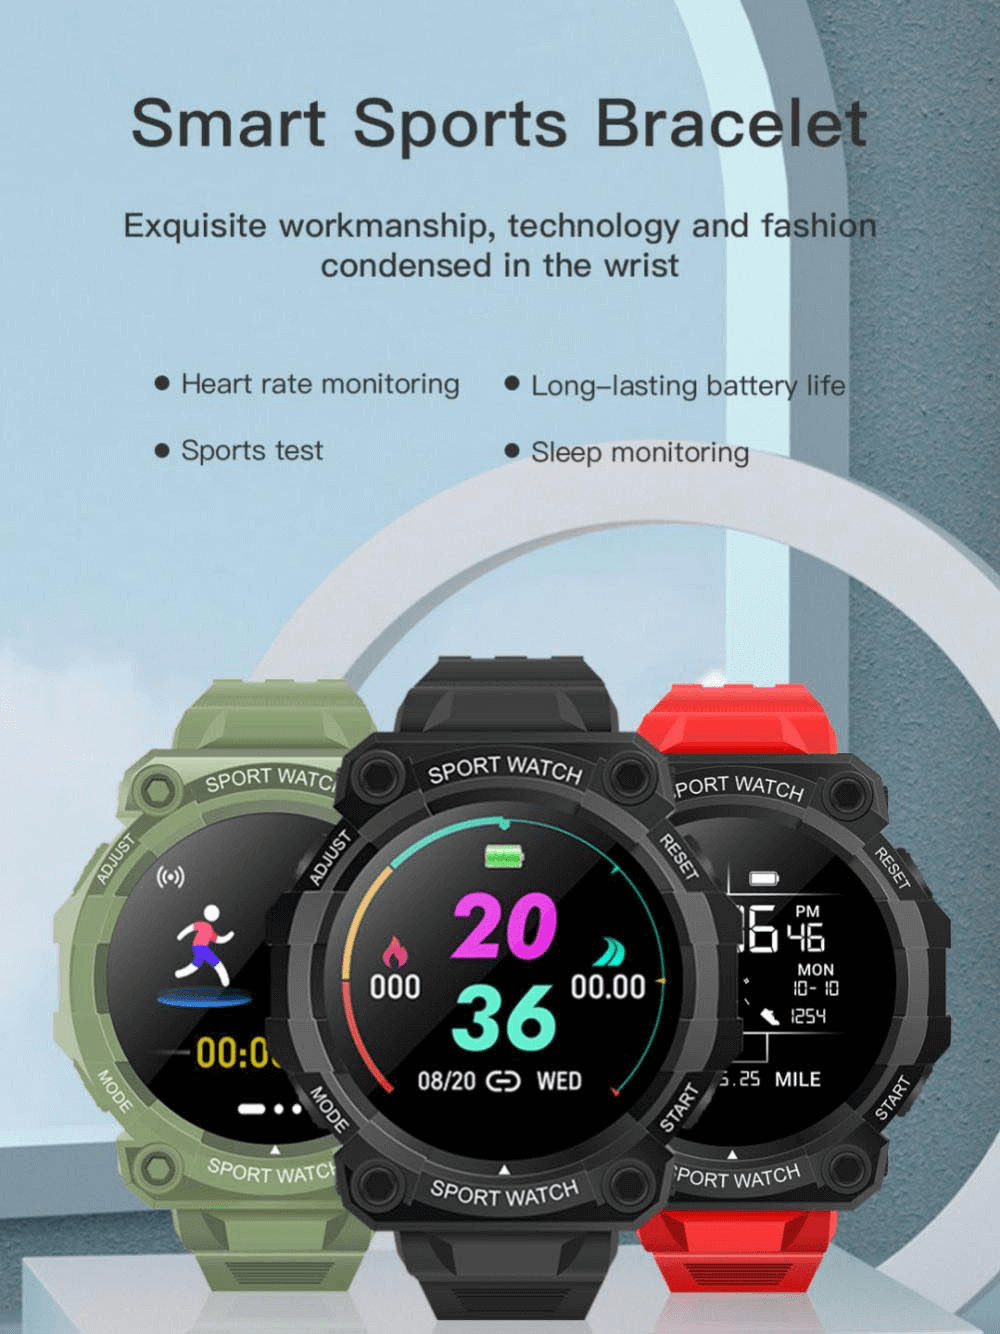 Waterproof Touch Screen Sports Fitness Wristwatch - SF0435